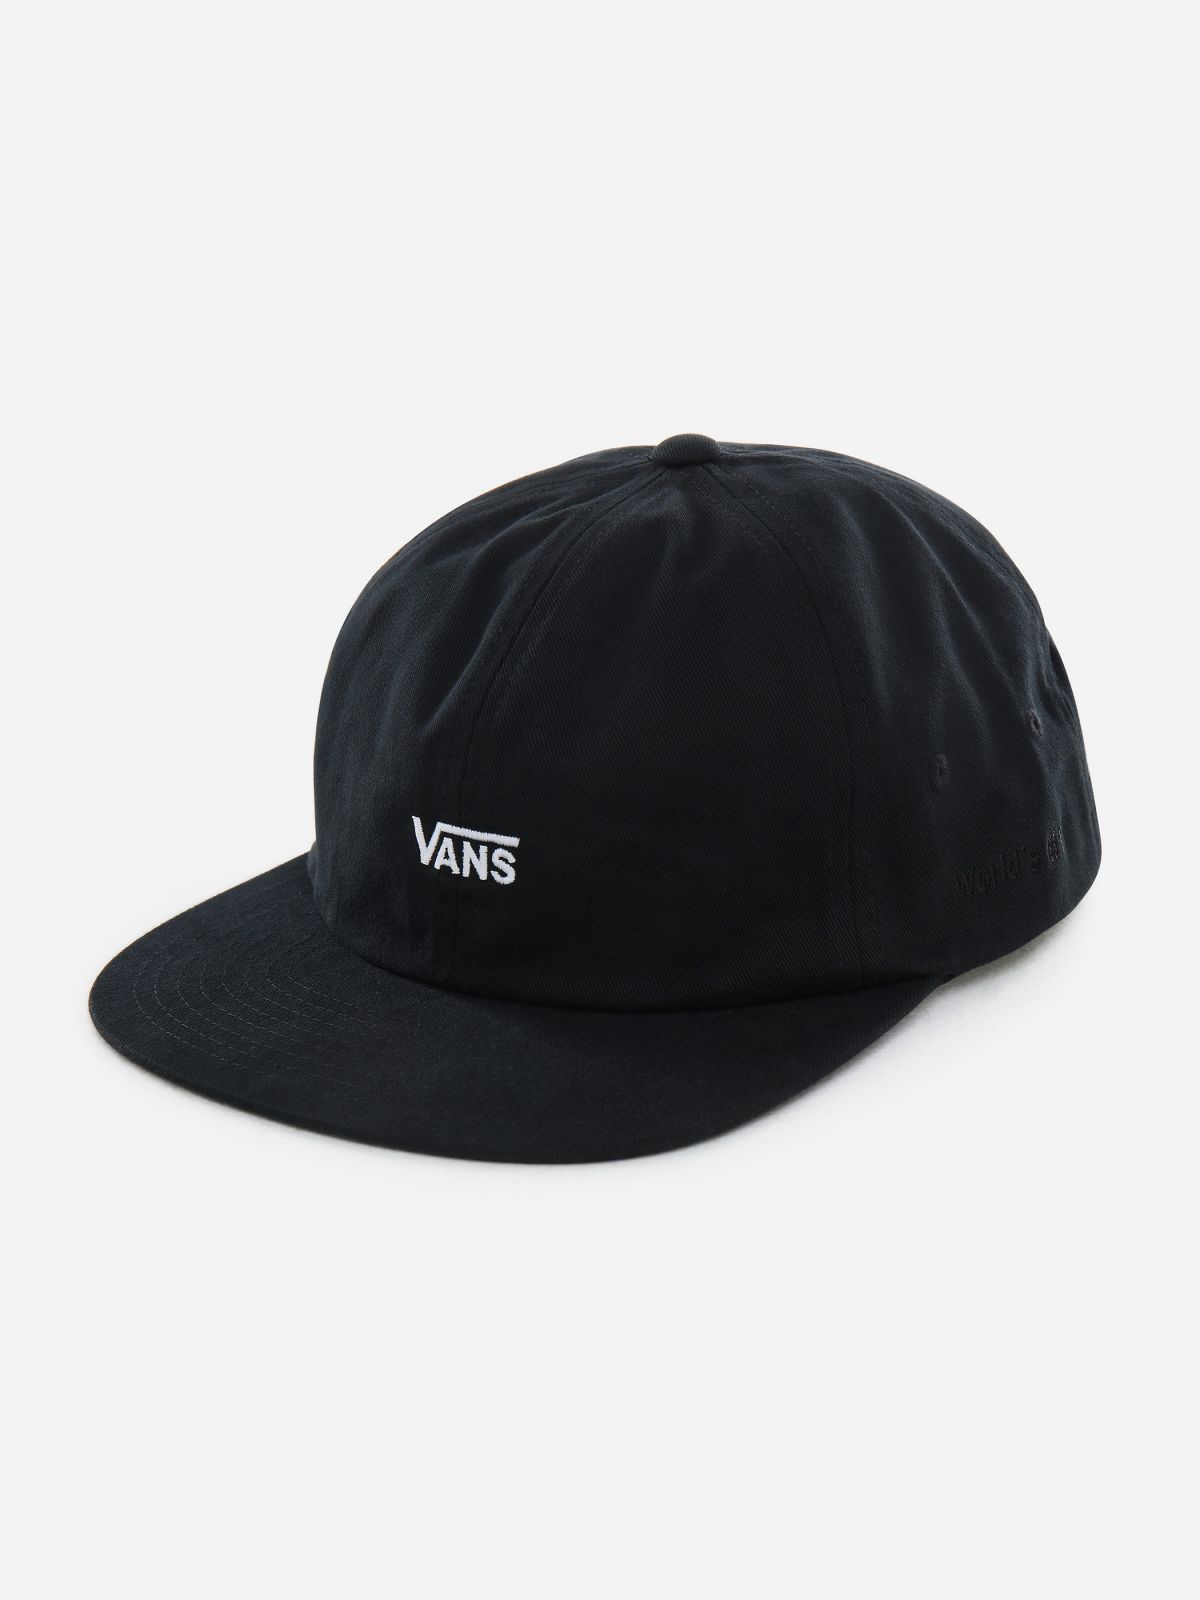  כובע מצחייה עם רקמת לוגו / גברים של VANS